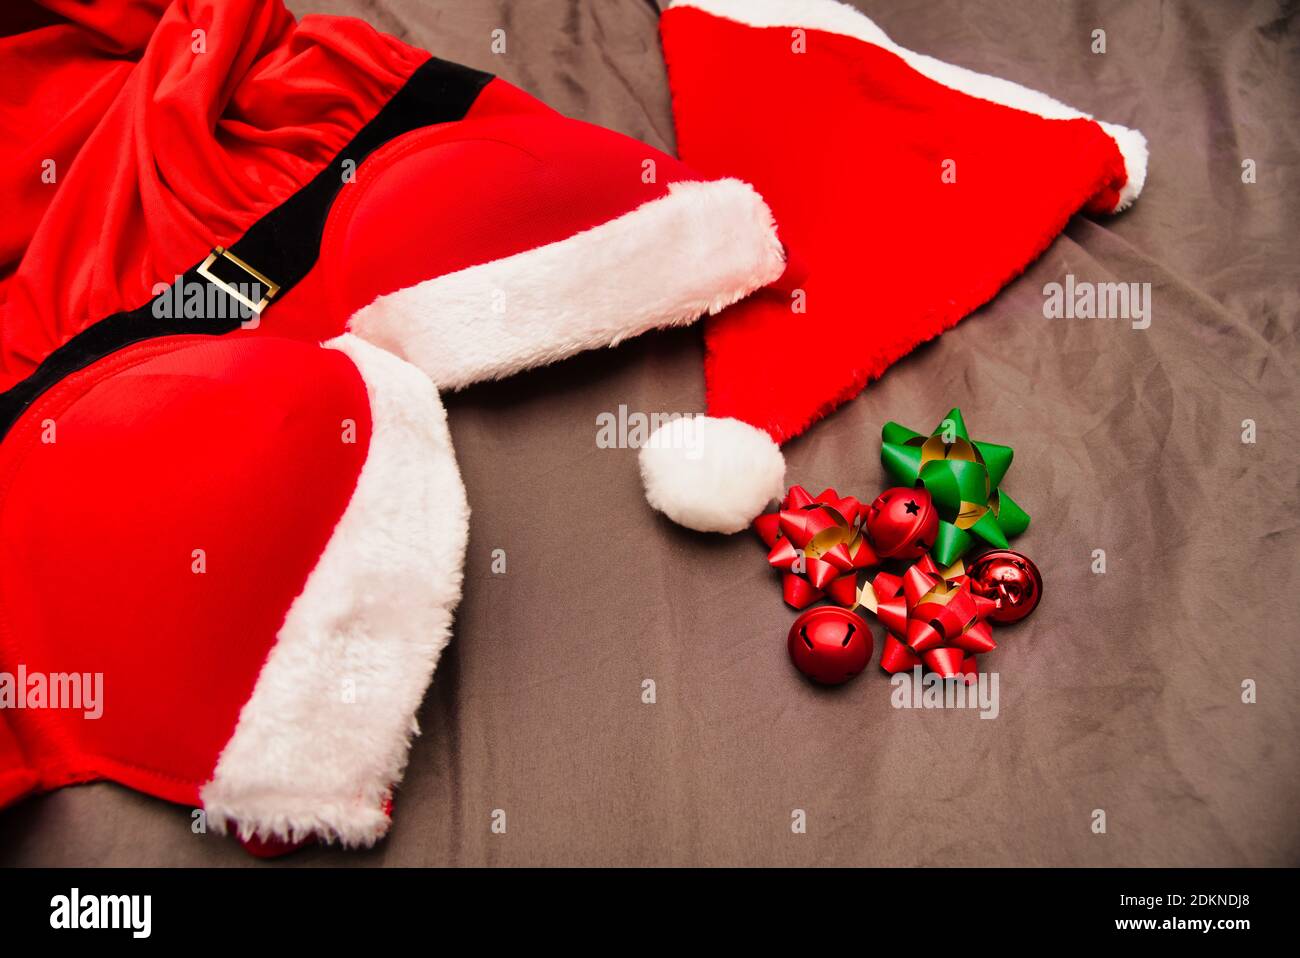 Natale Babbo Natale intimo rosso su fogli sminuzzati Foto Stock